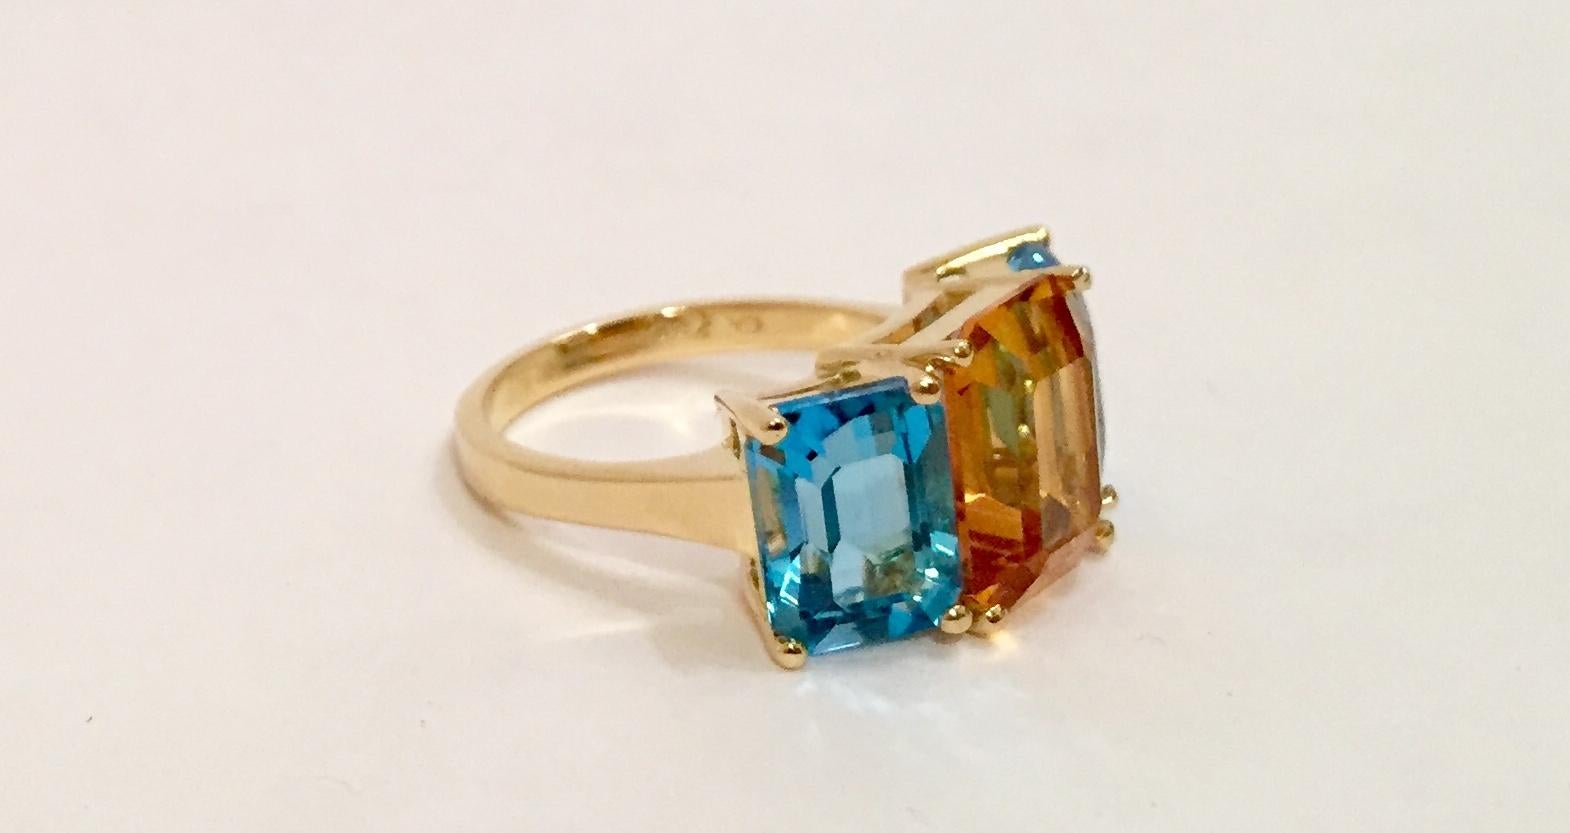 18 Karat Gelbgold Mini-Ring im Smaragdschliff mit orangefarbenem Citrin und blauem Topas.

Dieser Mini-Ring im Smaragdschliff kann in jeder Ringgröße und mit jeder farbigen Halbedelsteinkombination angefertigt werden.  Der Ring wird für jeden Kunden